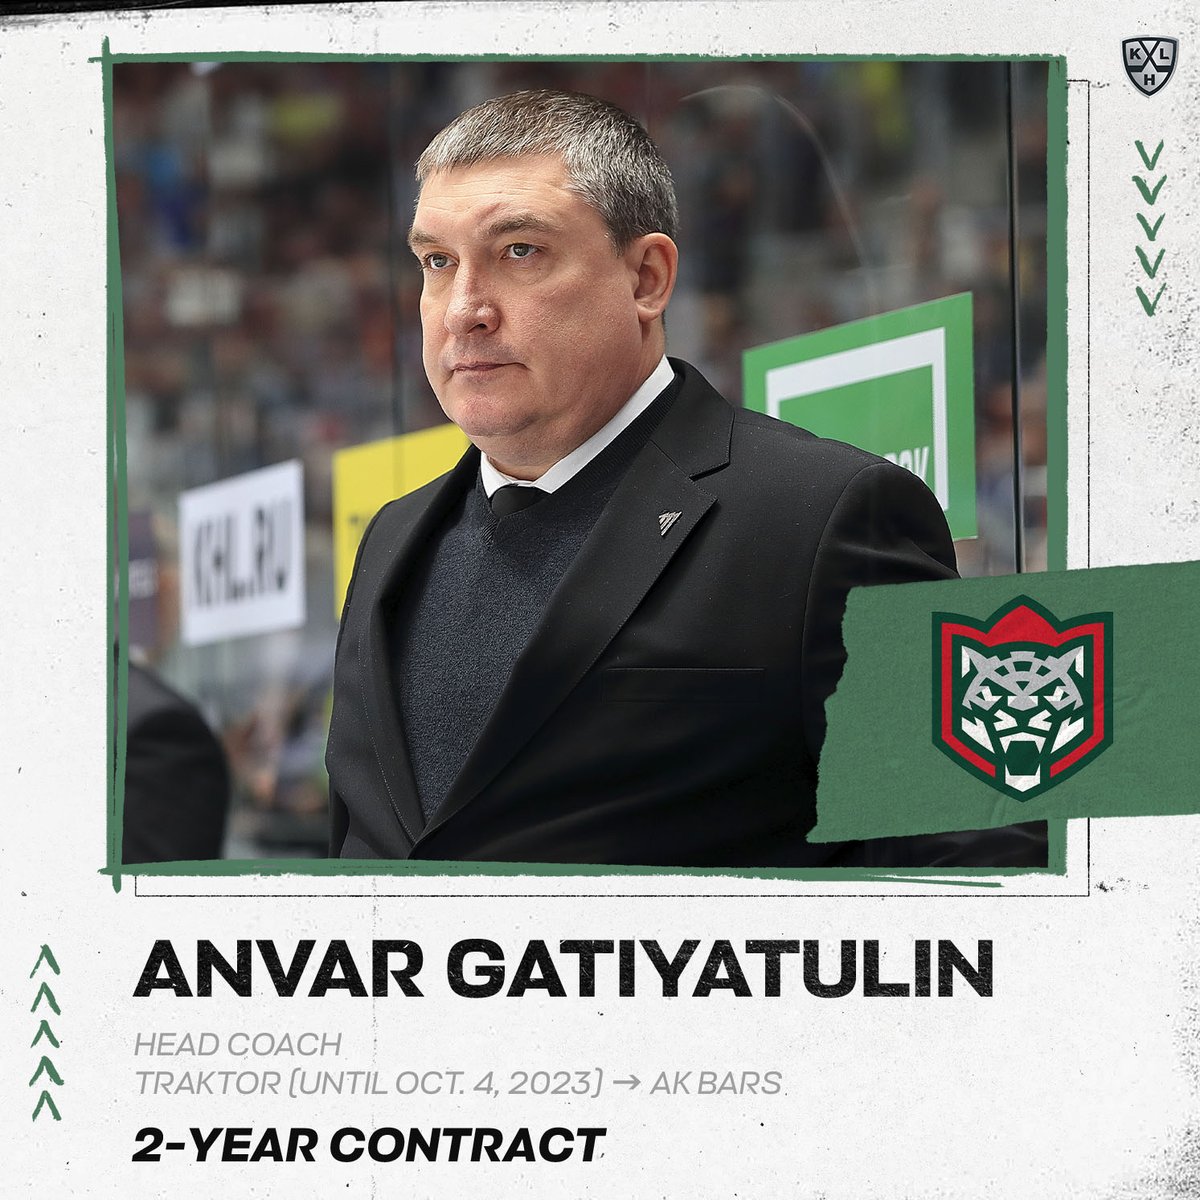 Ak Bars named Anvar Gatiyatulin their newest head coach.